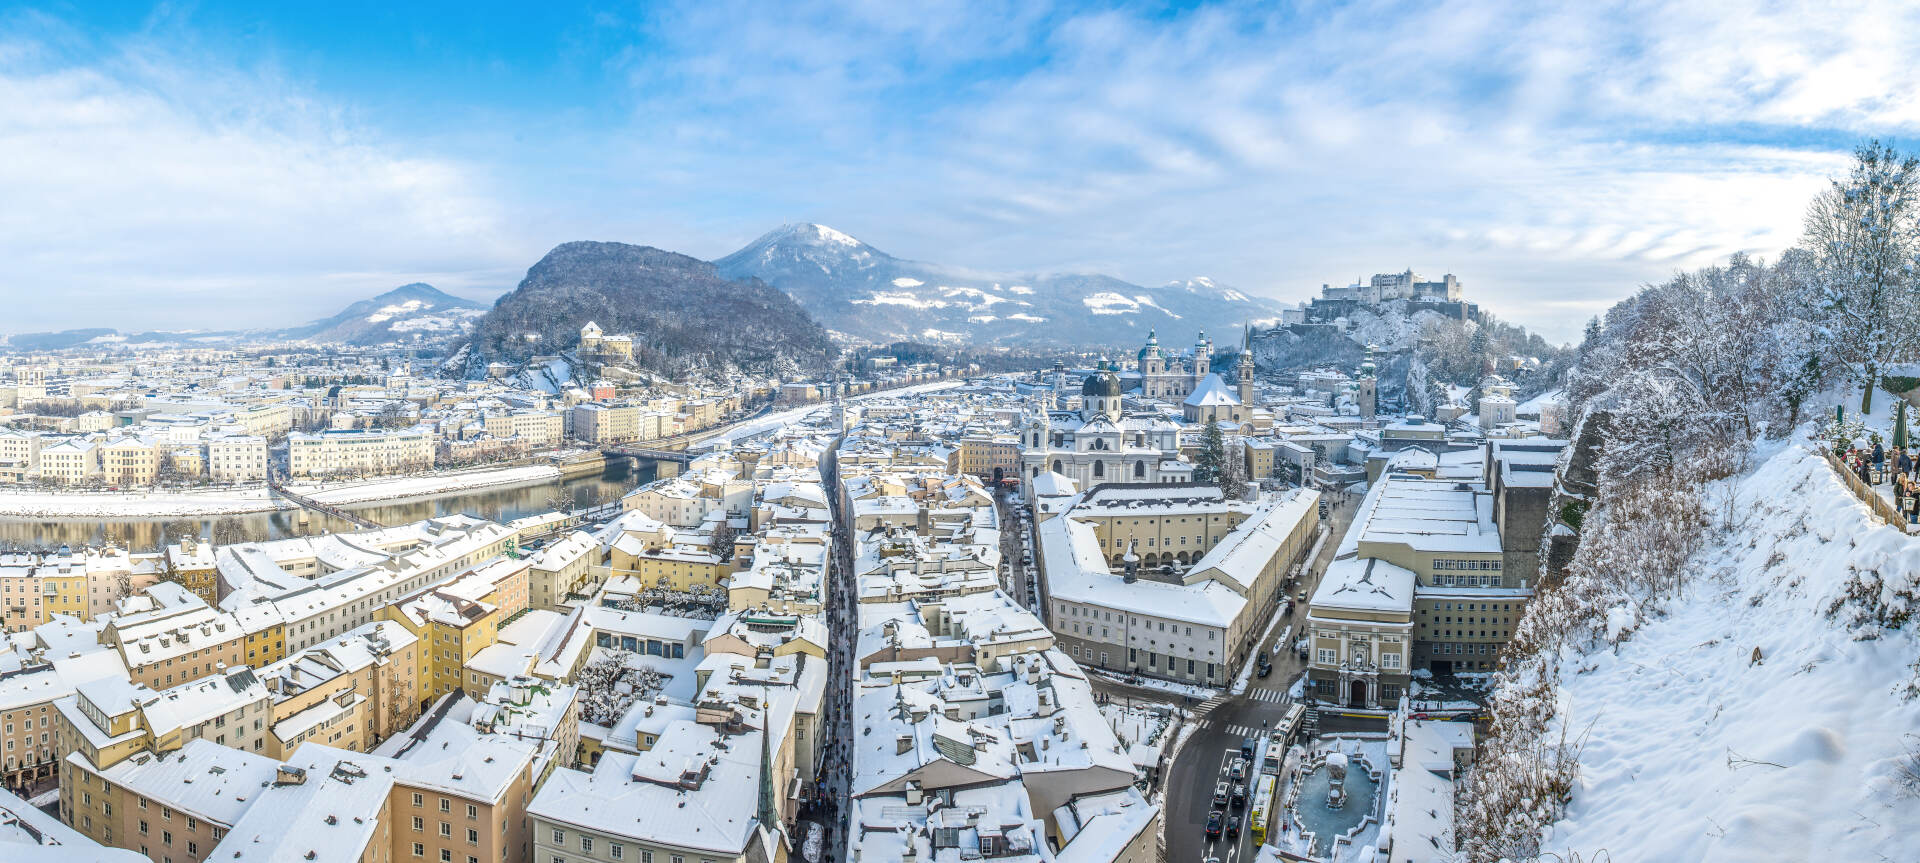 Salzburg im Winter mit Gaisberg im Hintergrund © Tourismus Salzburg GmbH